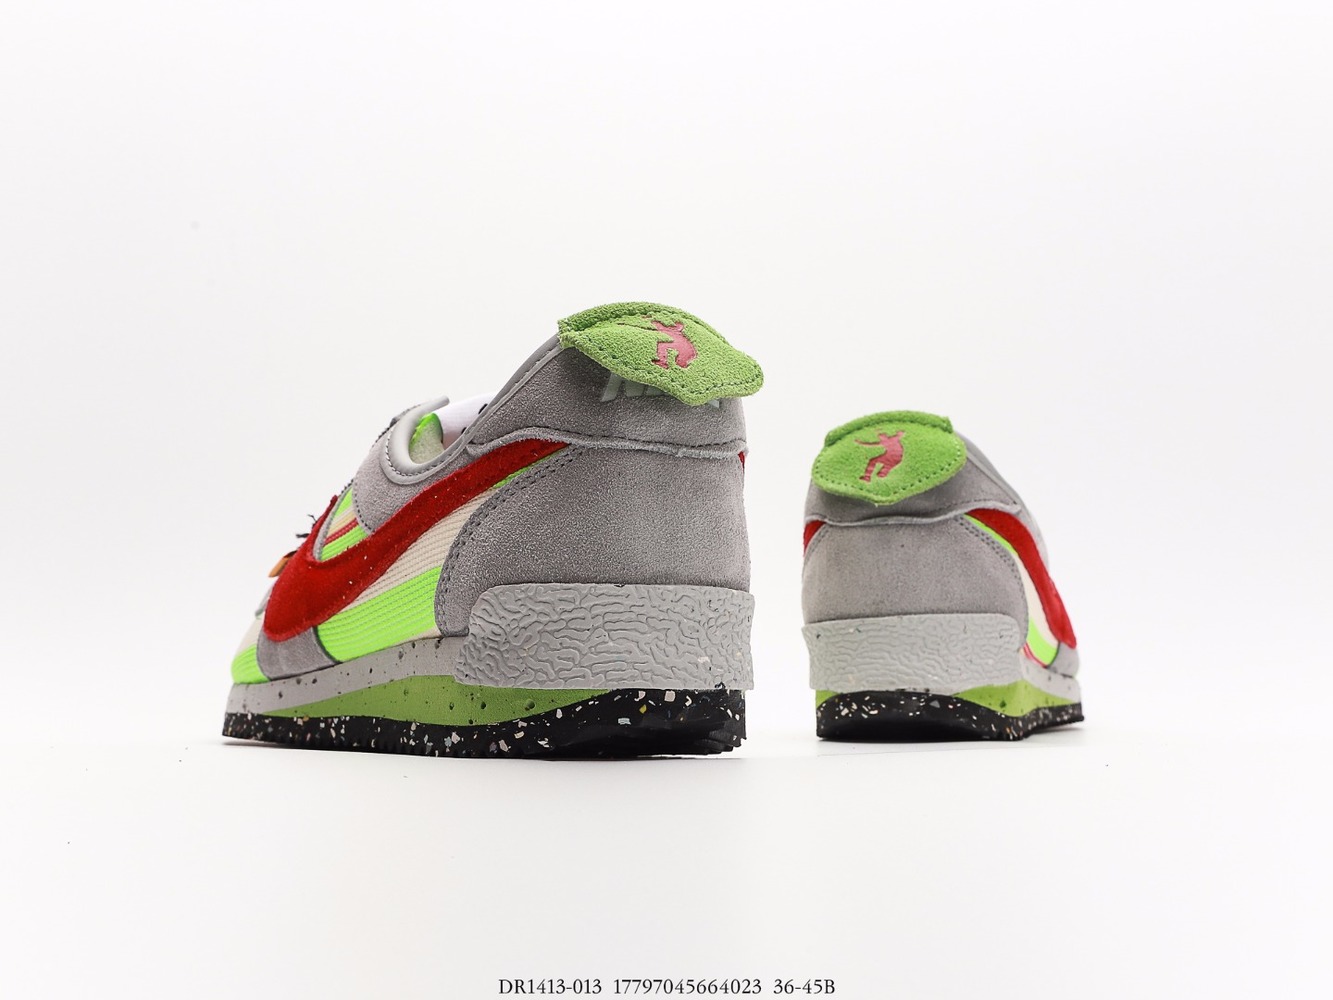 Union LA x Nike Cortez LowBlack_DR1413-013